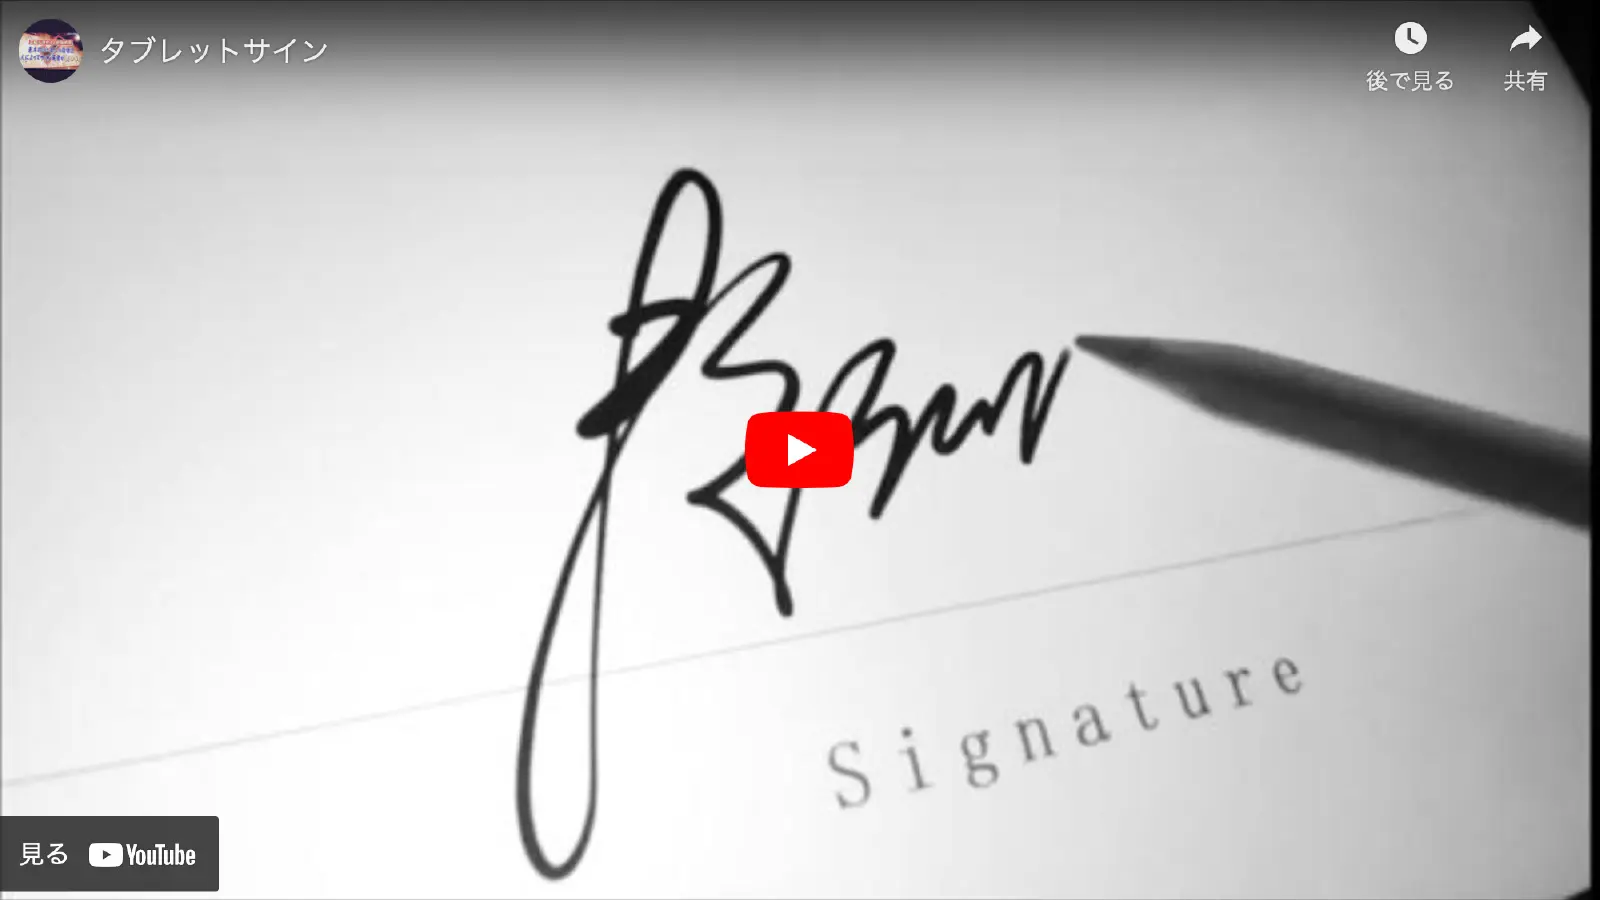 タブレットでのサイン方法を示す動画へのリンク画像